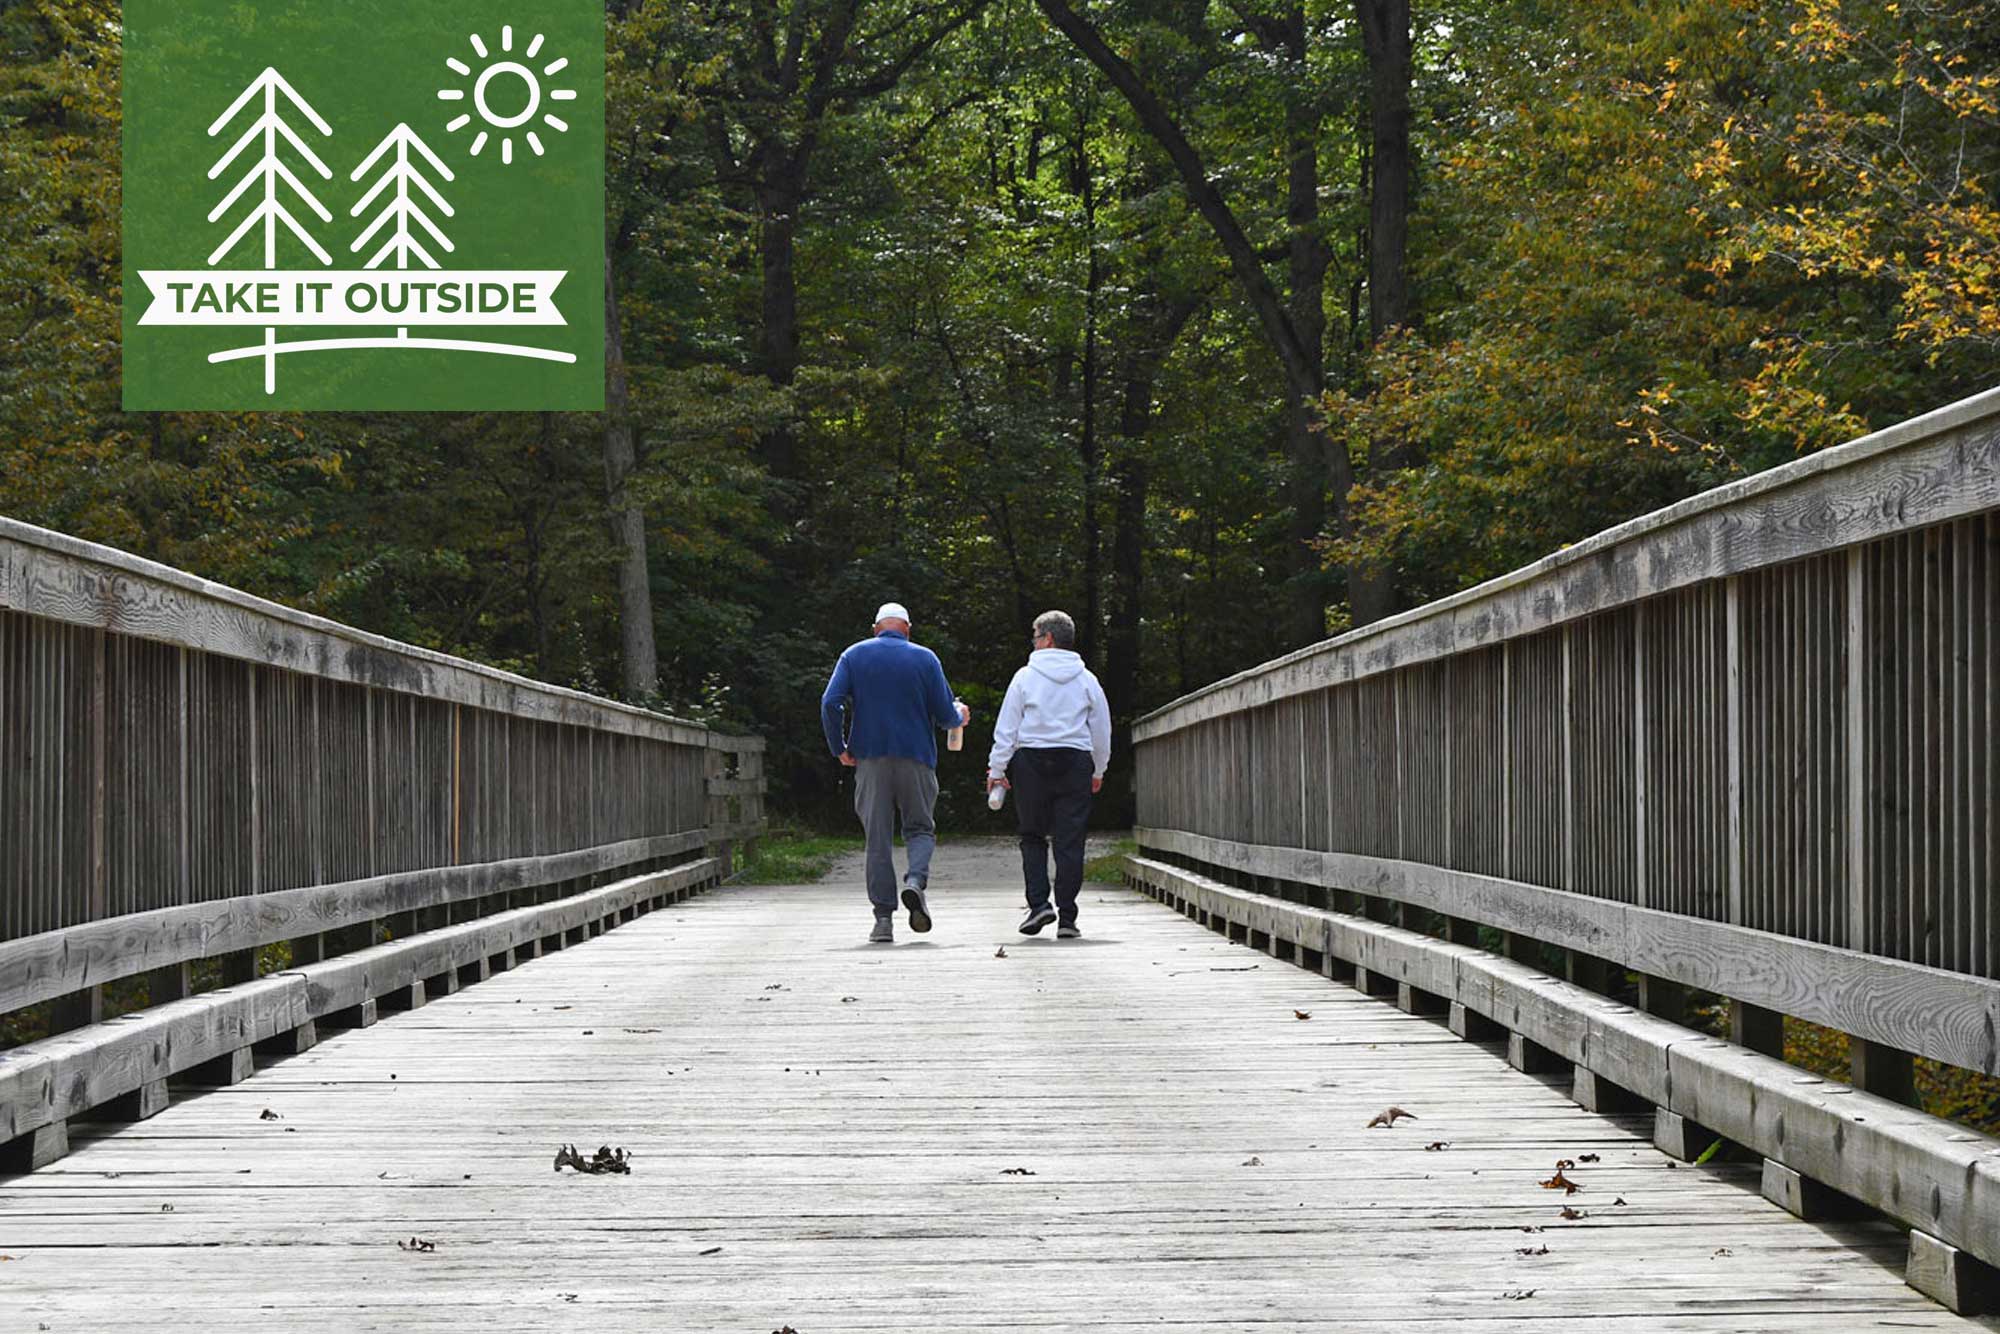 A man and woman walking across a trail bridge.